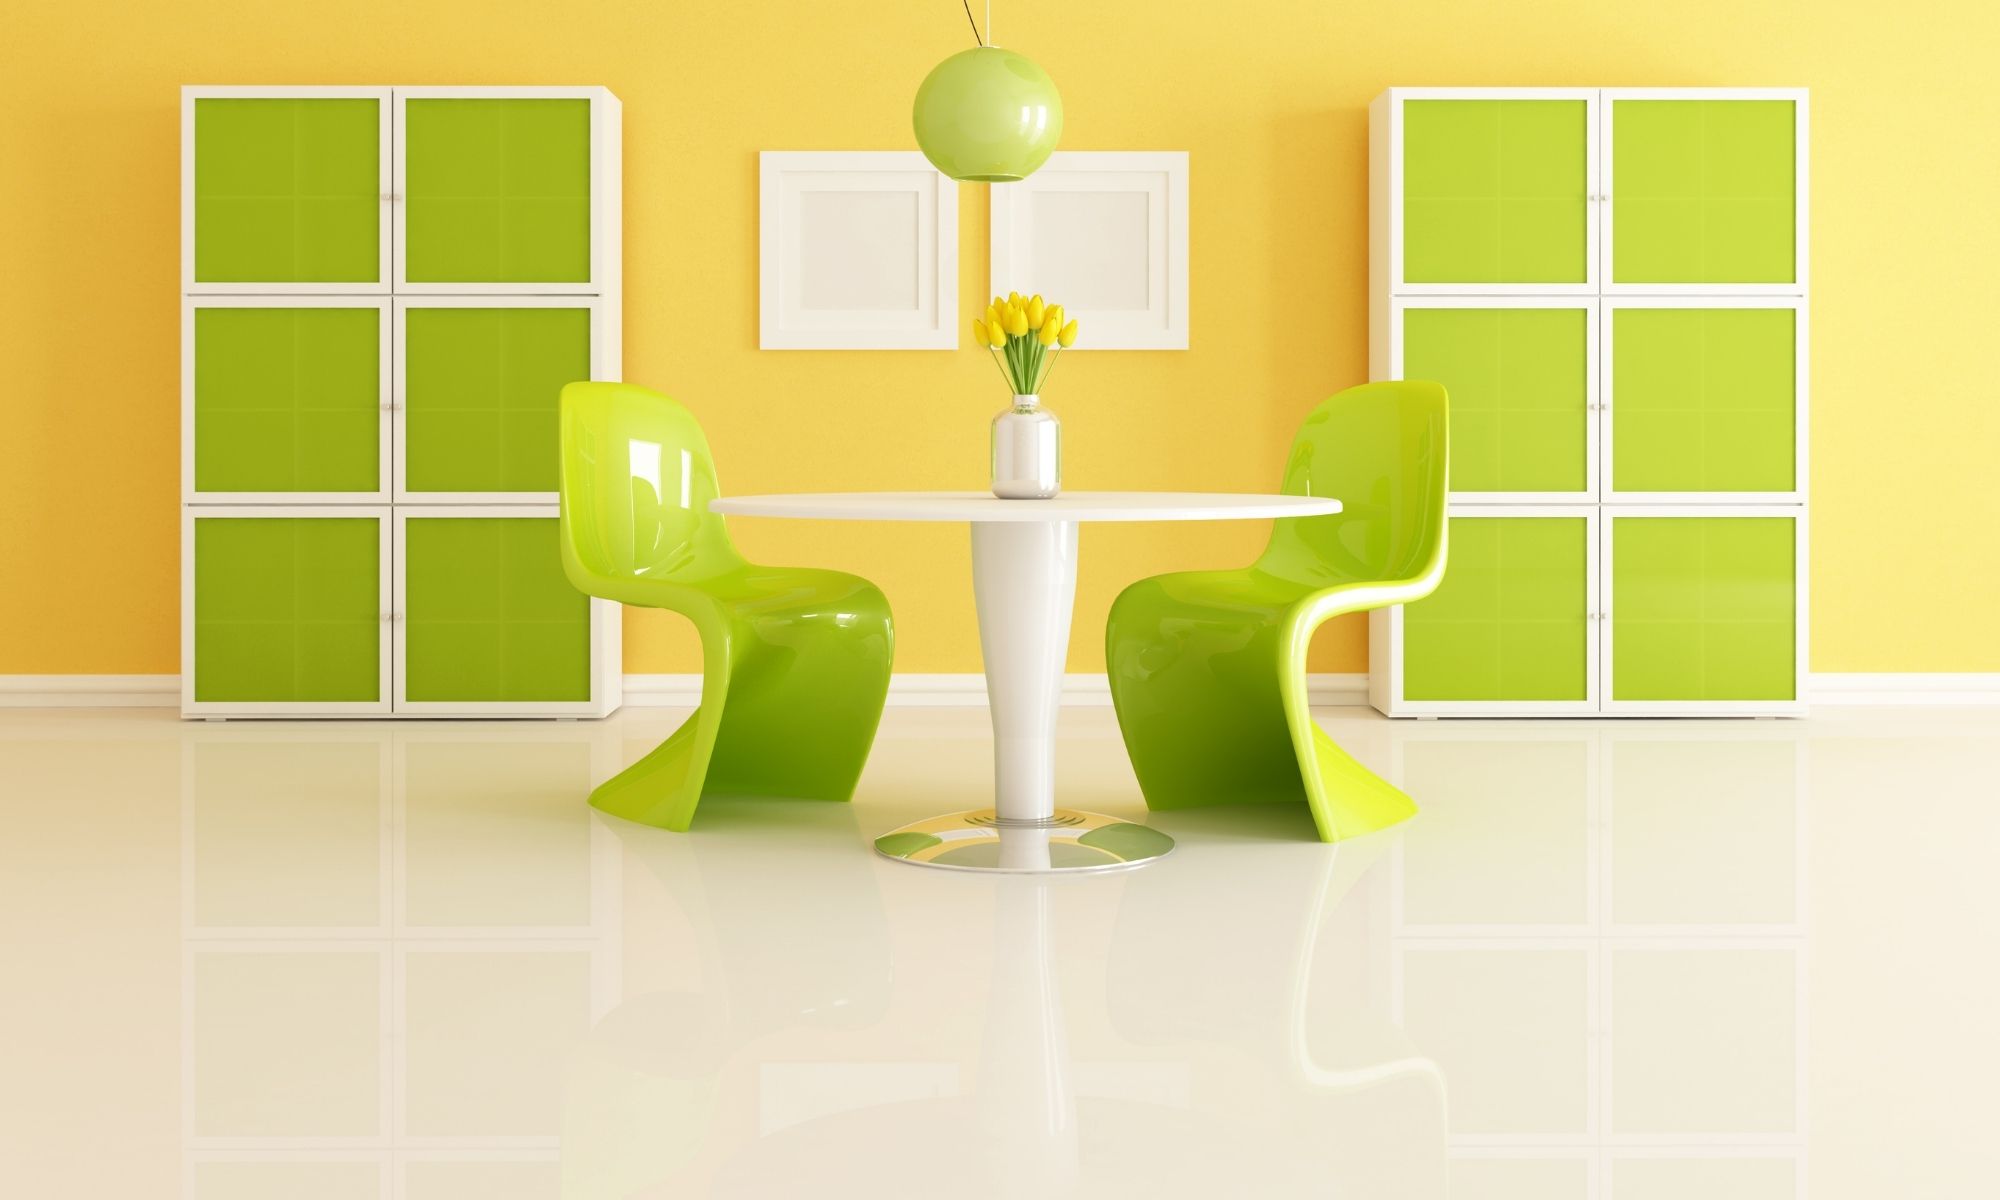 Blog - Home and Interior Design